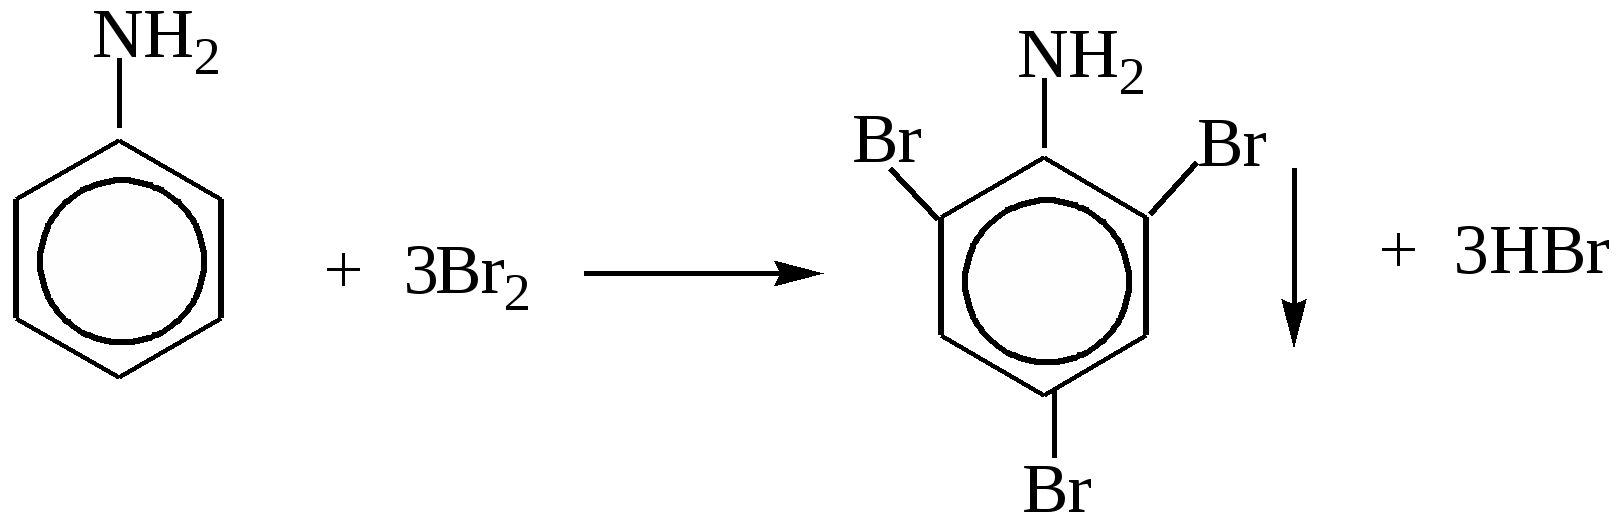 Анилин caocl2. Анилин плюс хлорная известь. Анилин и хлорная известь качественная реакция. Анилин с хлорной известью реакция.